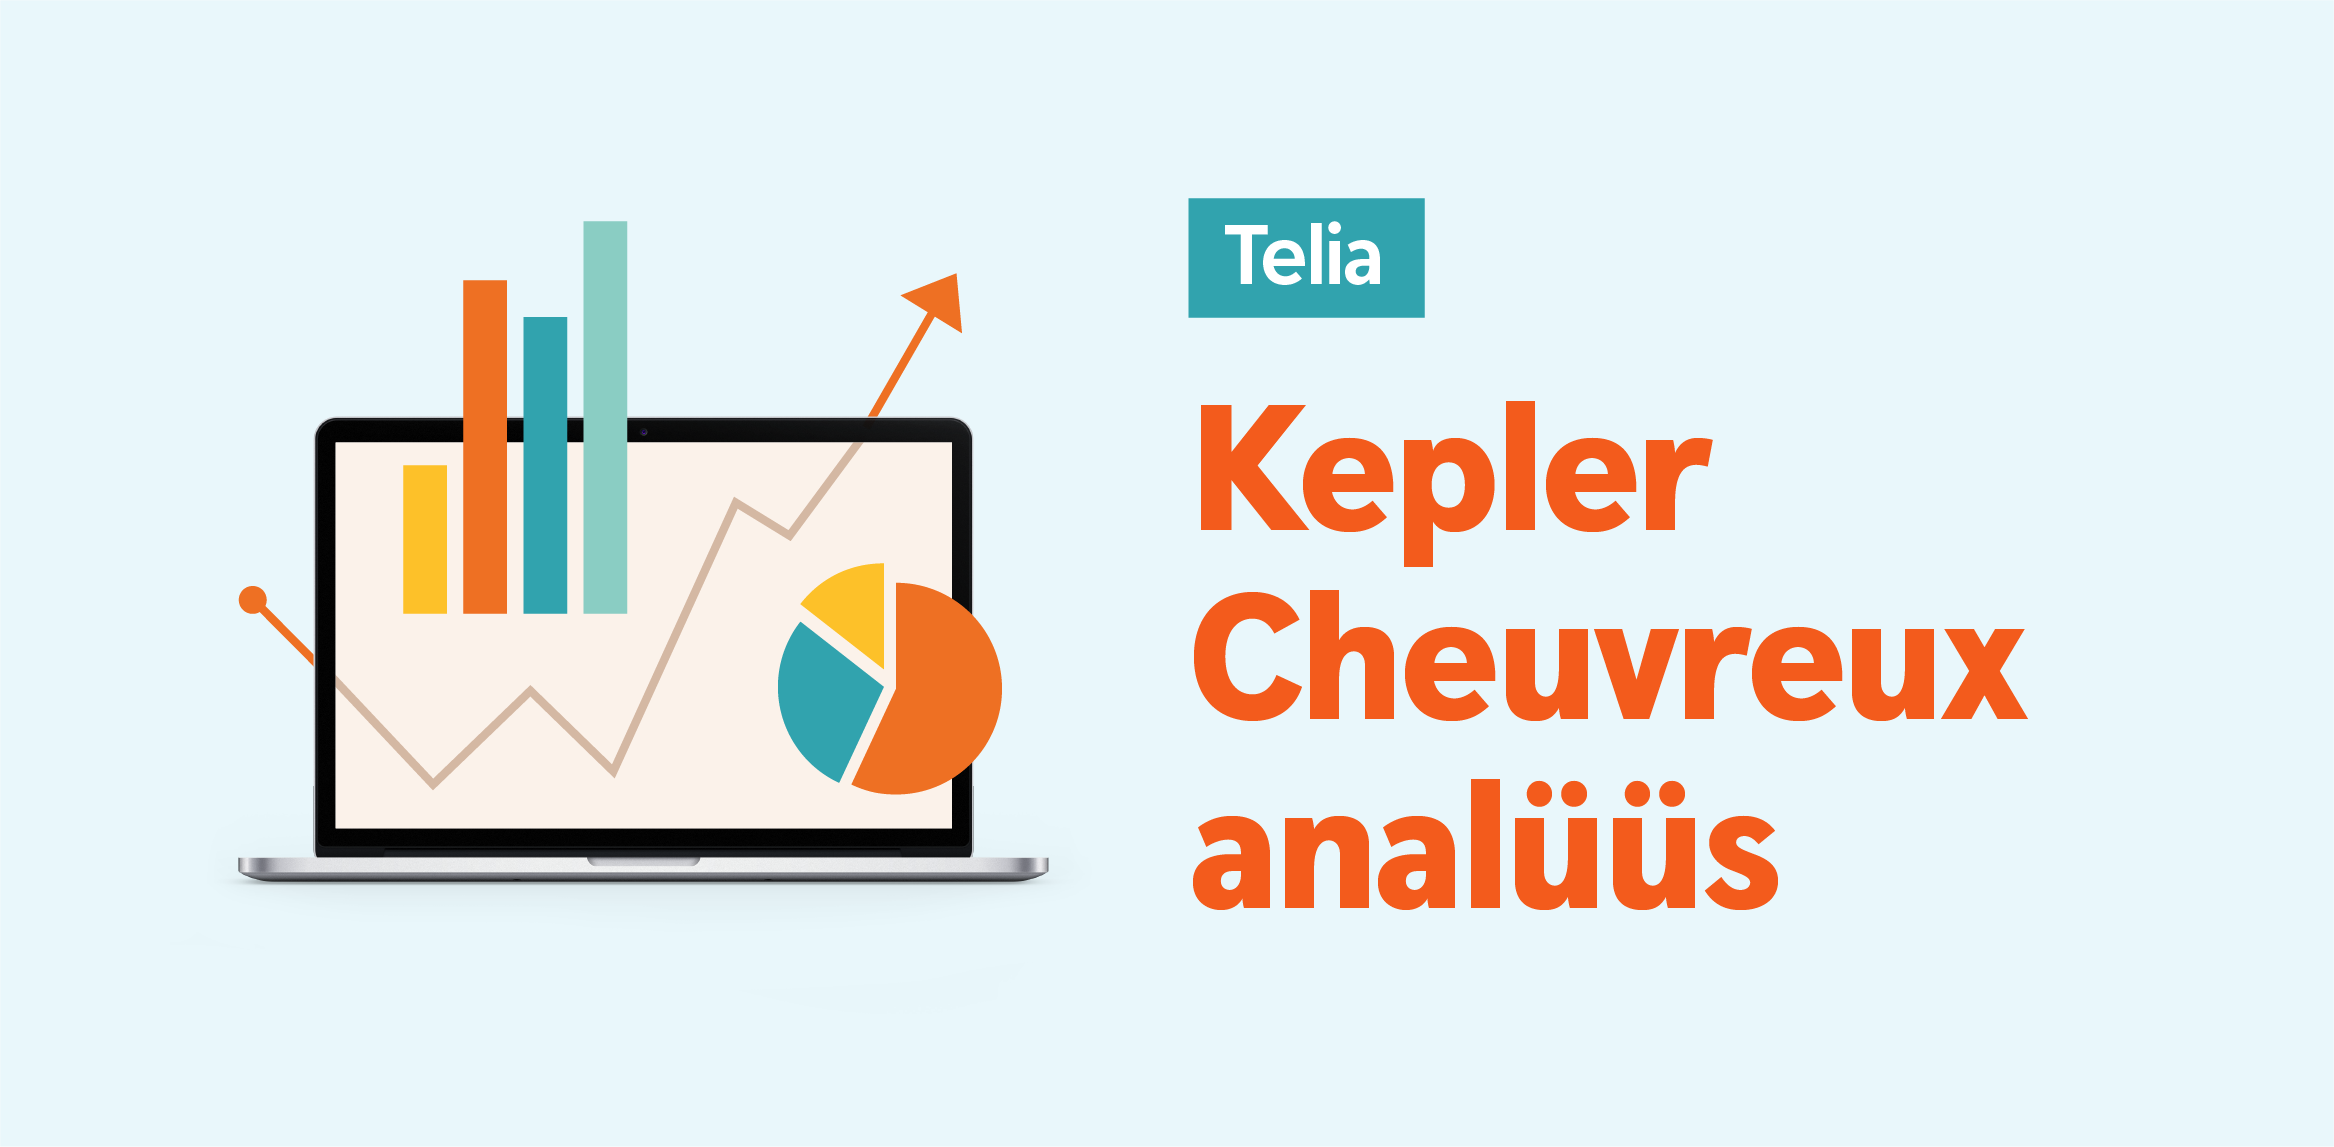 Kepler Cheuvreux kordas Telia aktsiale ostusoovitust